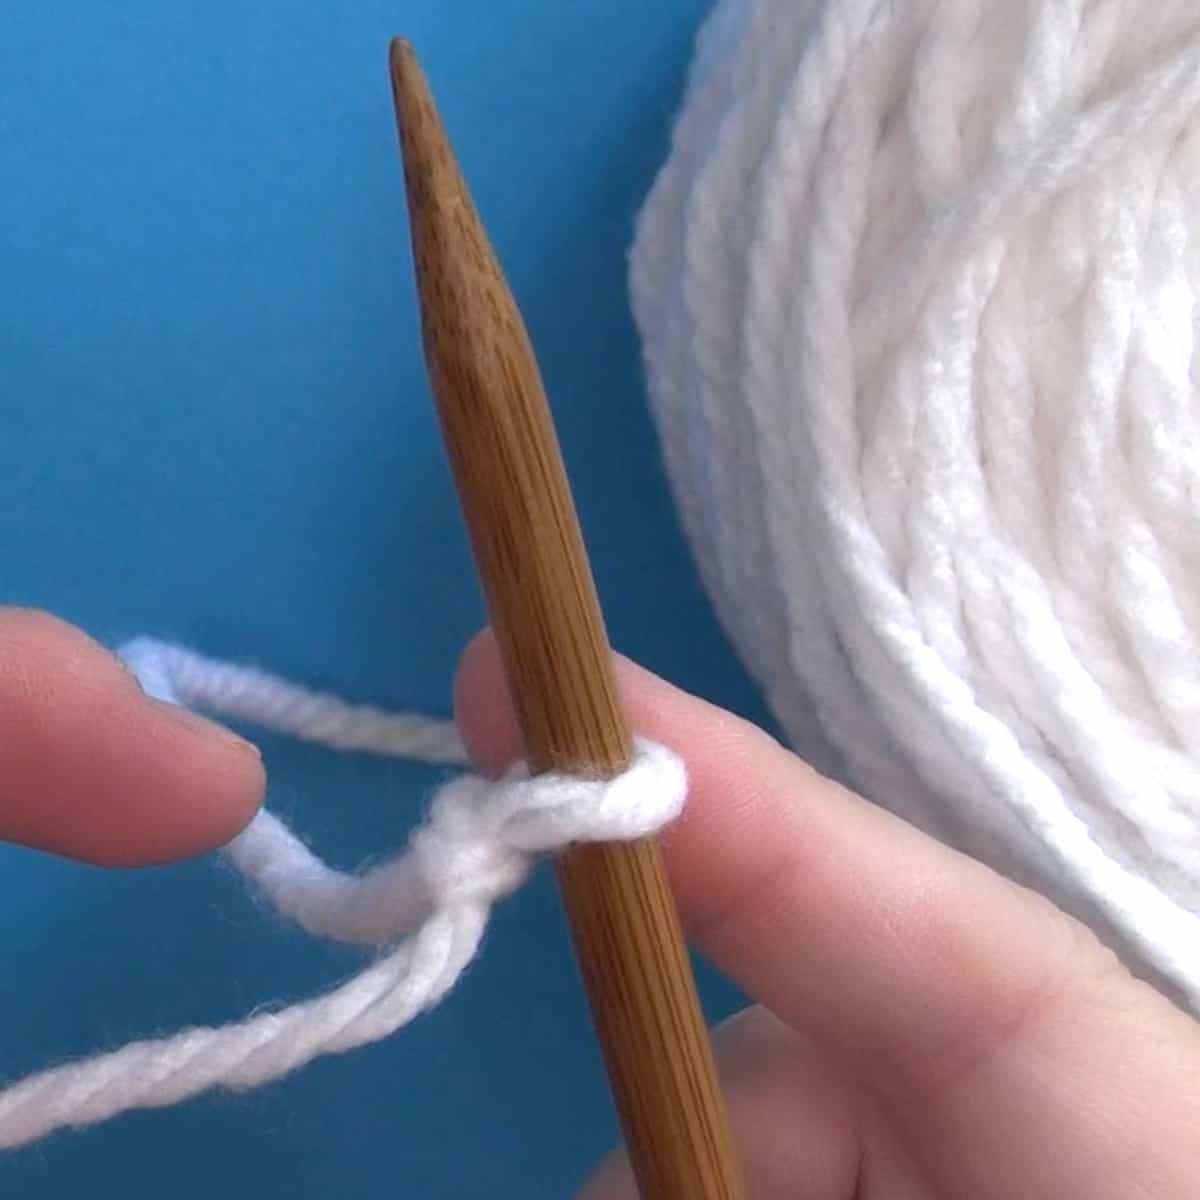 Slip Knot on knitting needle with white yarn.